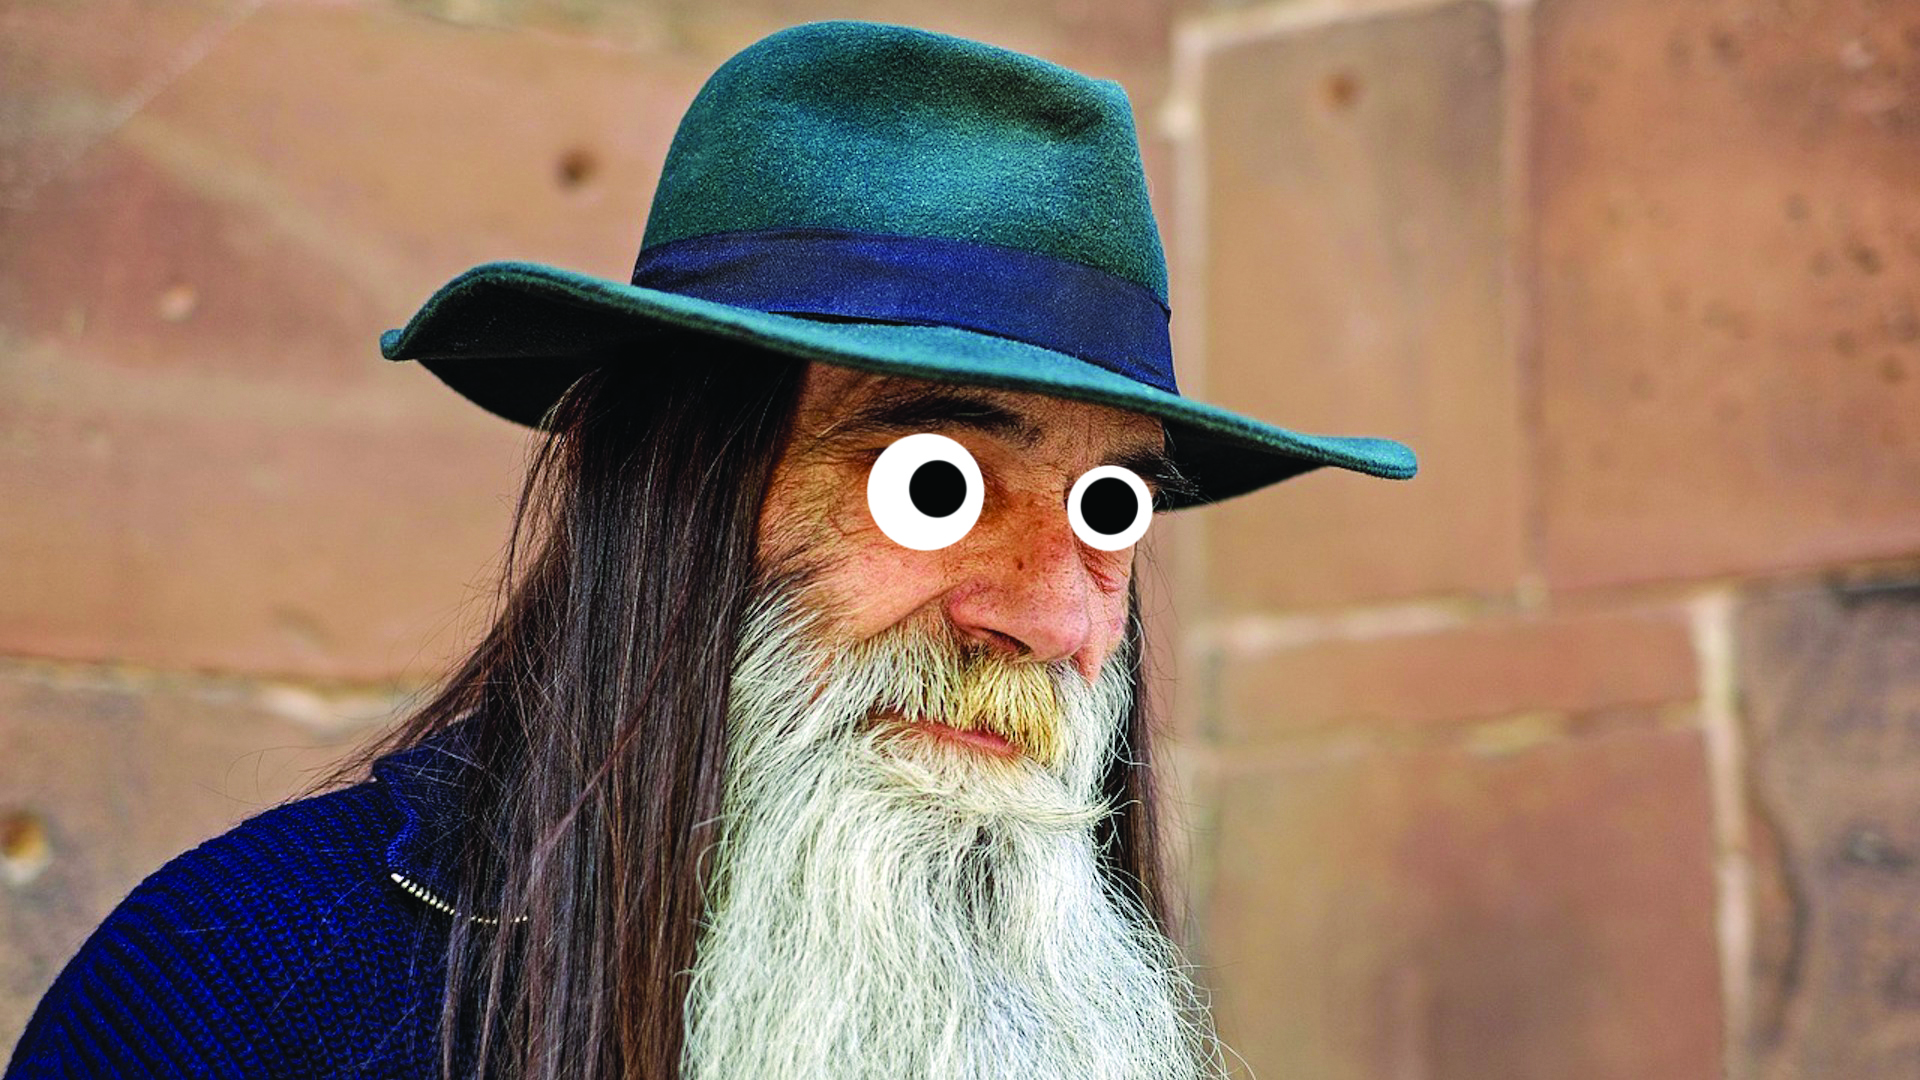 A beardy man wearing a hat